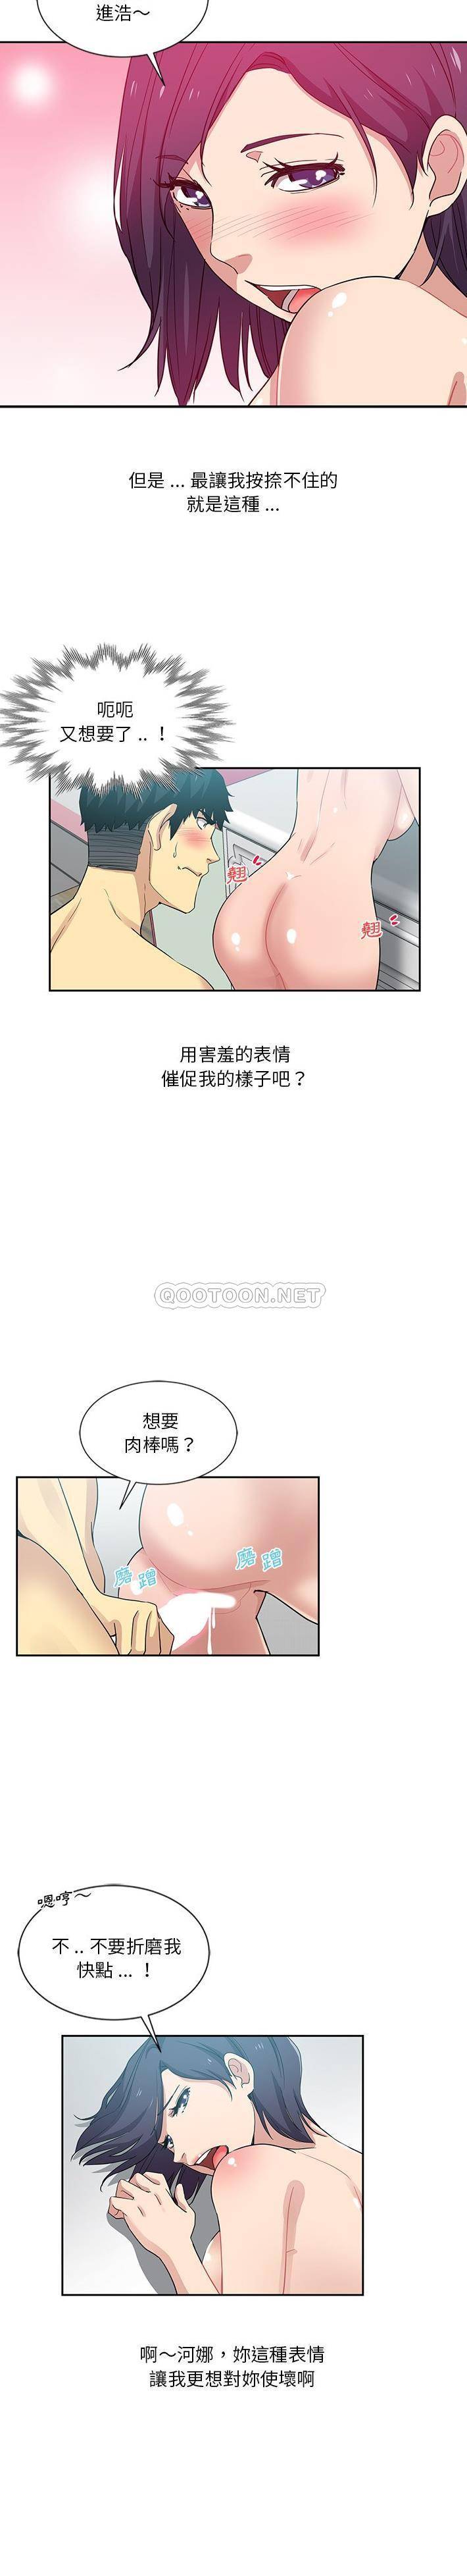 韩国污漫画 危險純友誼 第10话 9